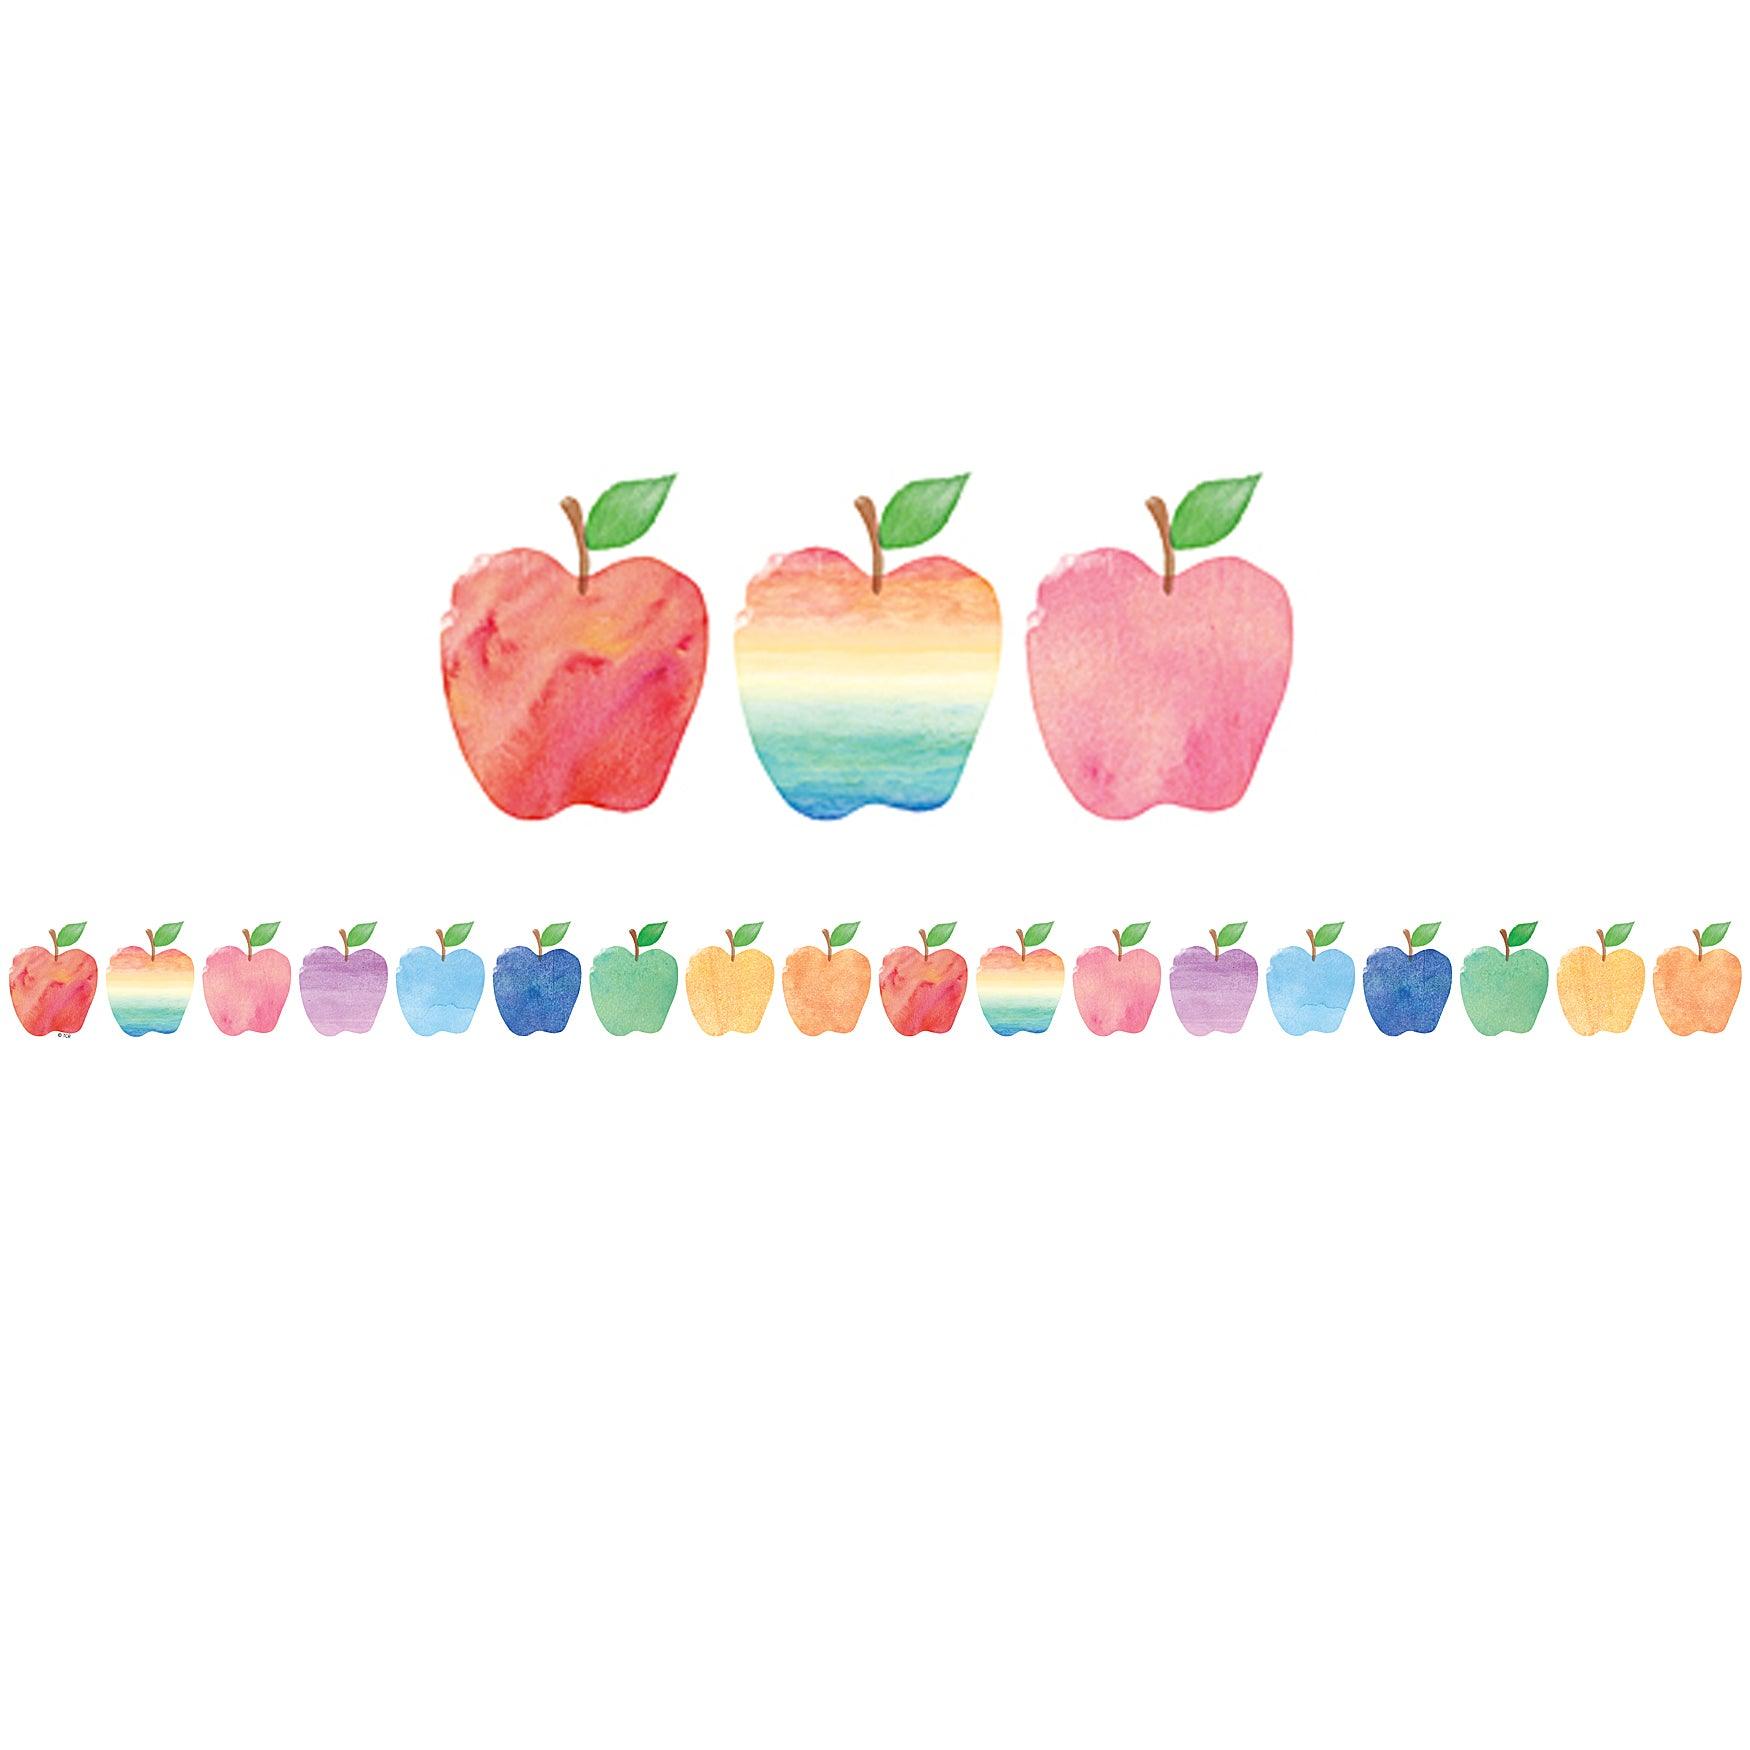 Watercolor Apples Die-Cut Border Trim, 35 Per Pack, 6 Packs - Loomini